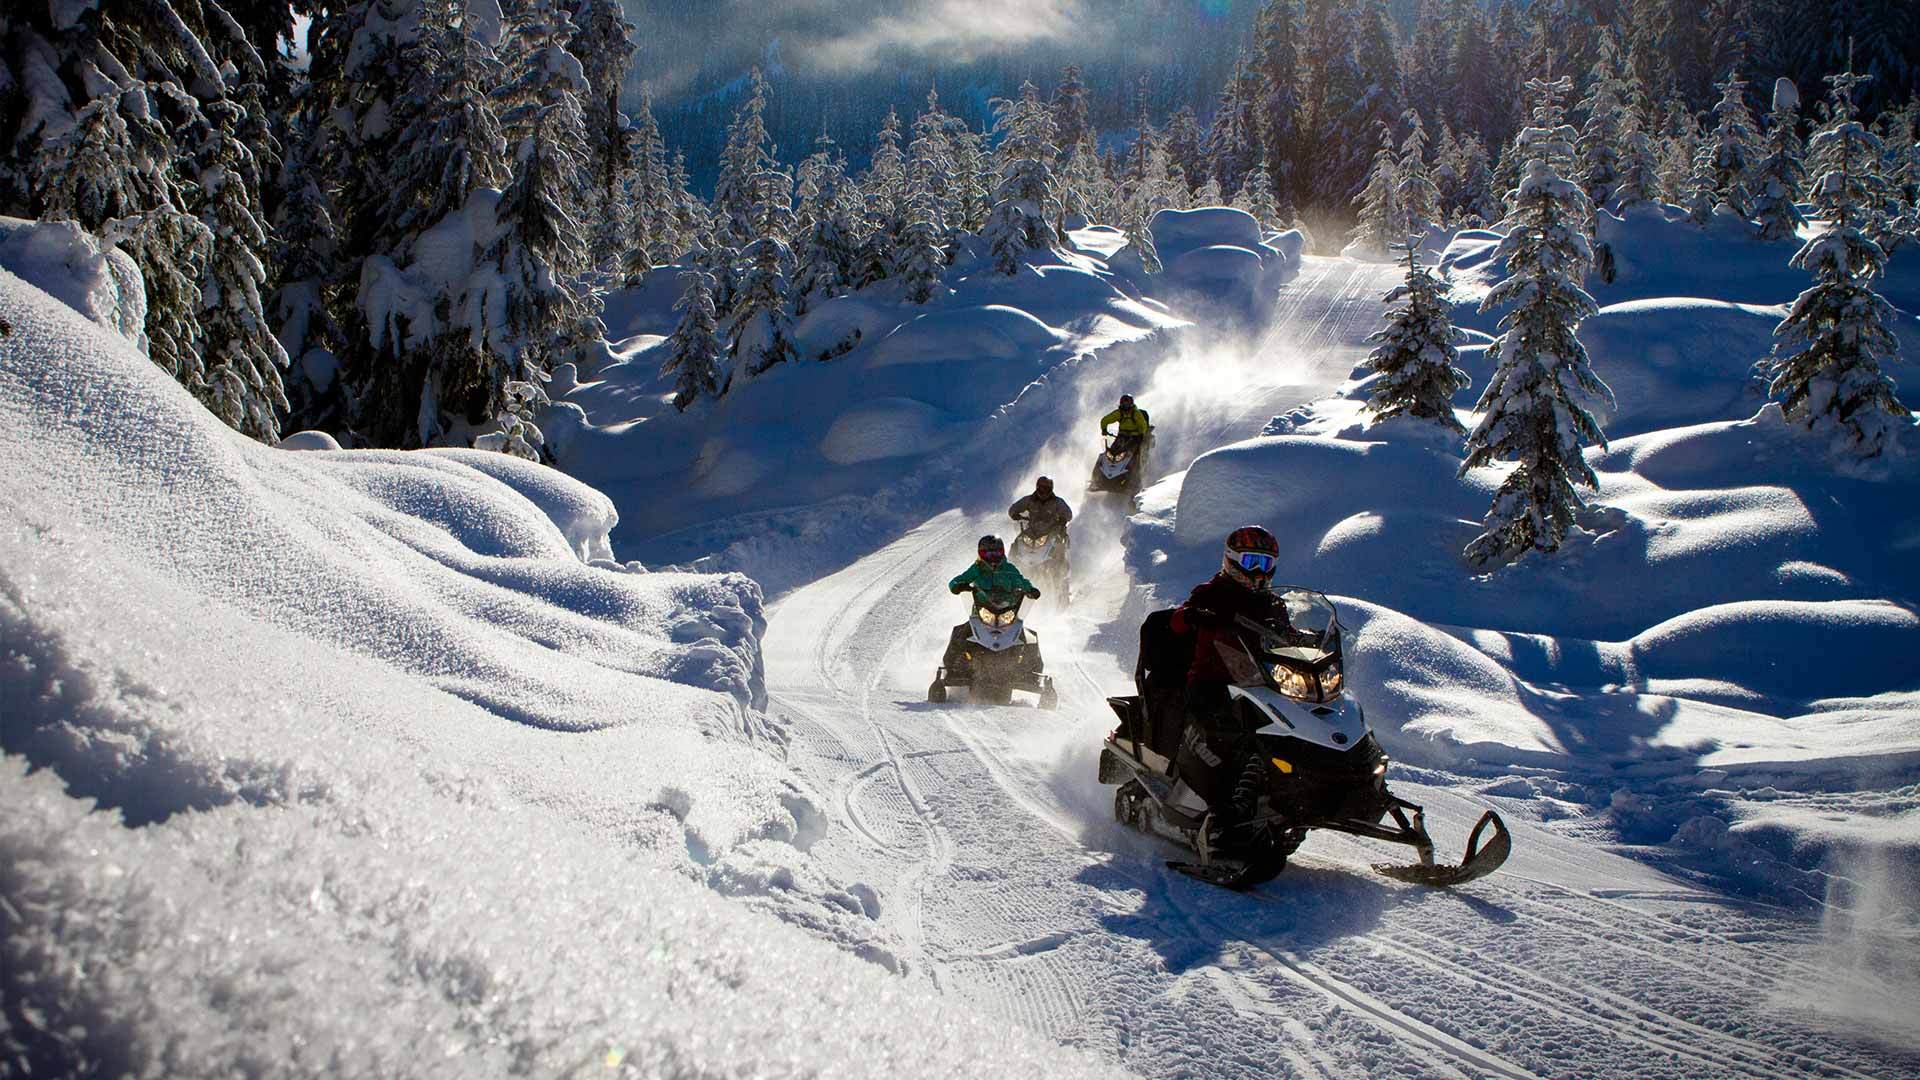 Colorado winter activities